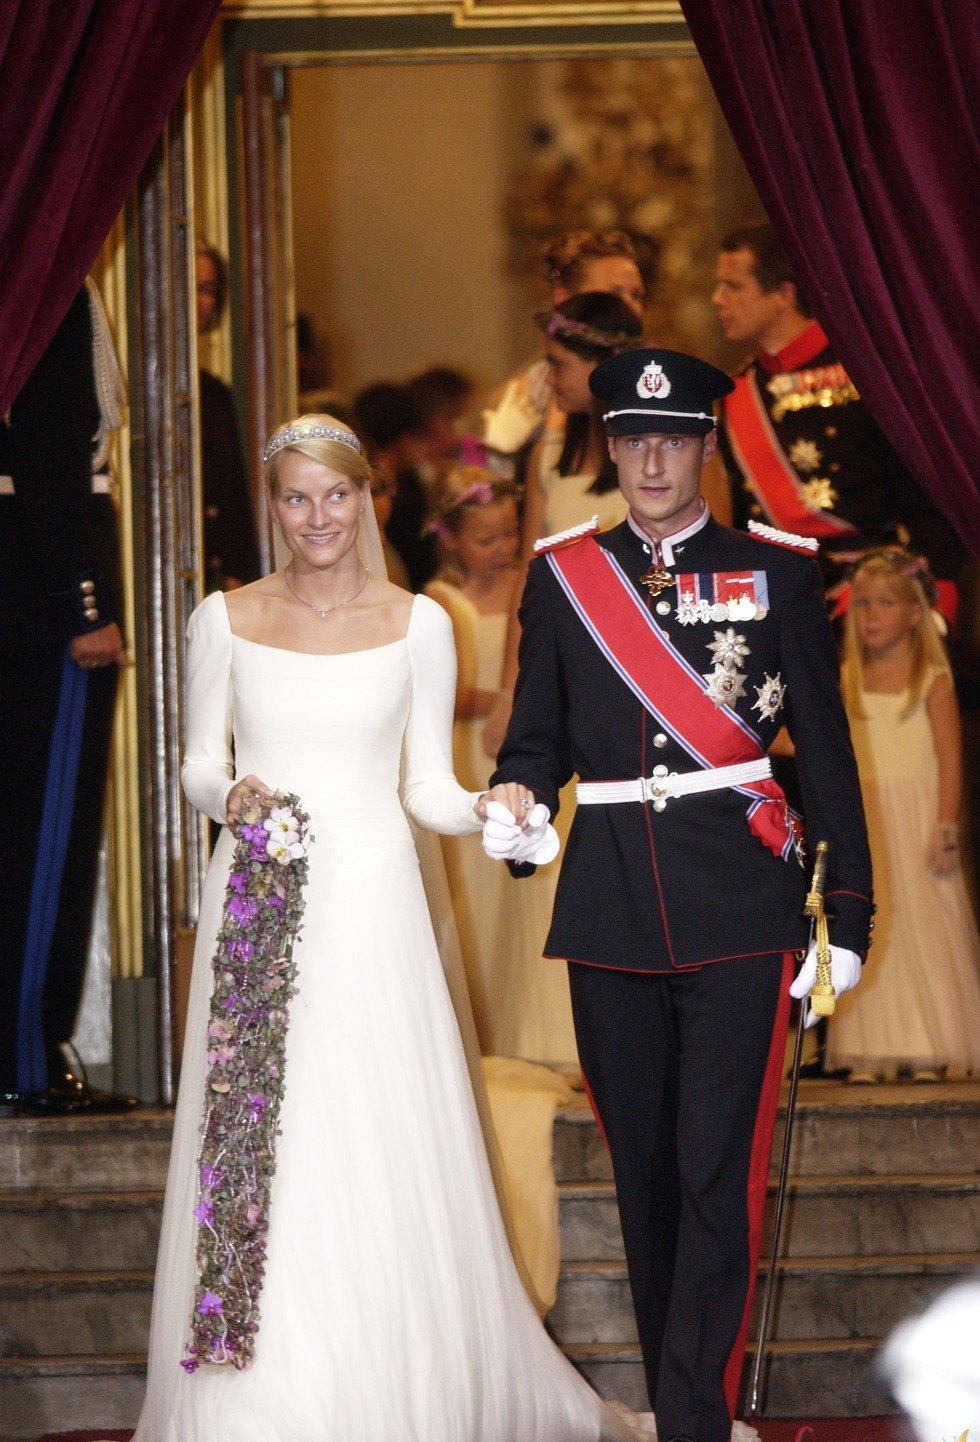 Из архивов: как выглядели королевские свадьбы 20 лет назад